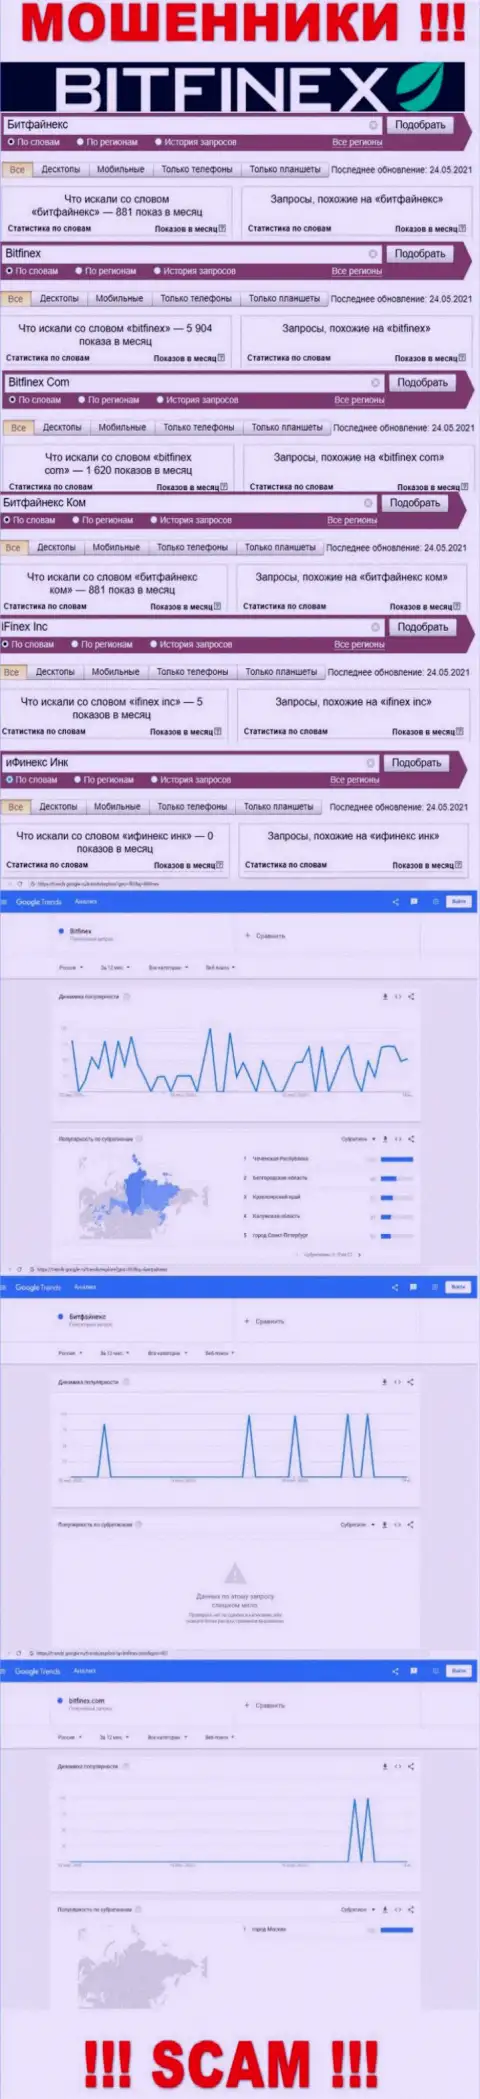 Суммарное число поисковых запросов в поисковиках всемирной интернет паутины по бренду мошенников Bitfinex Com